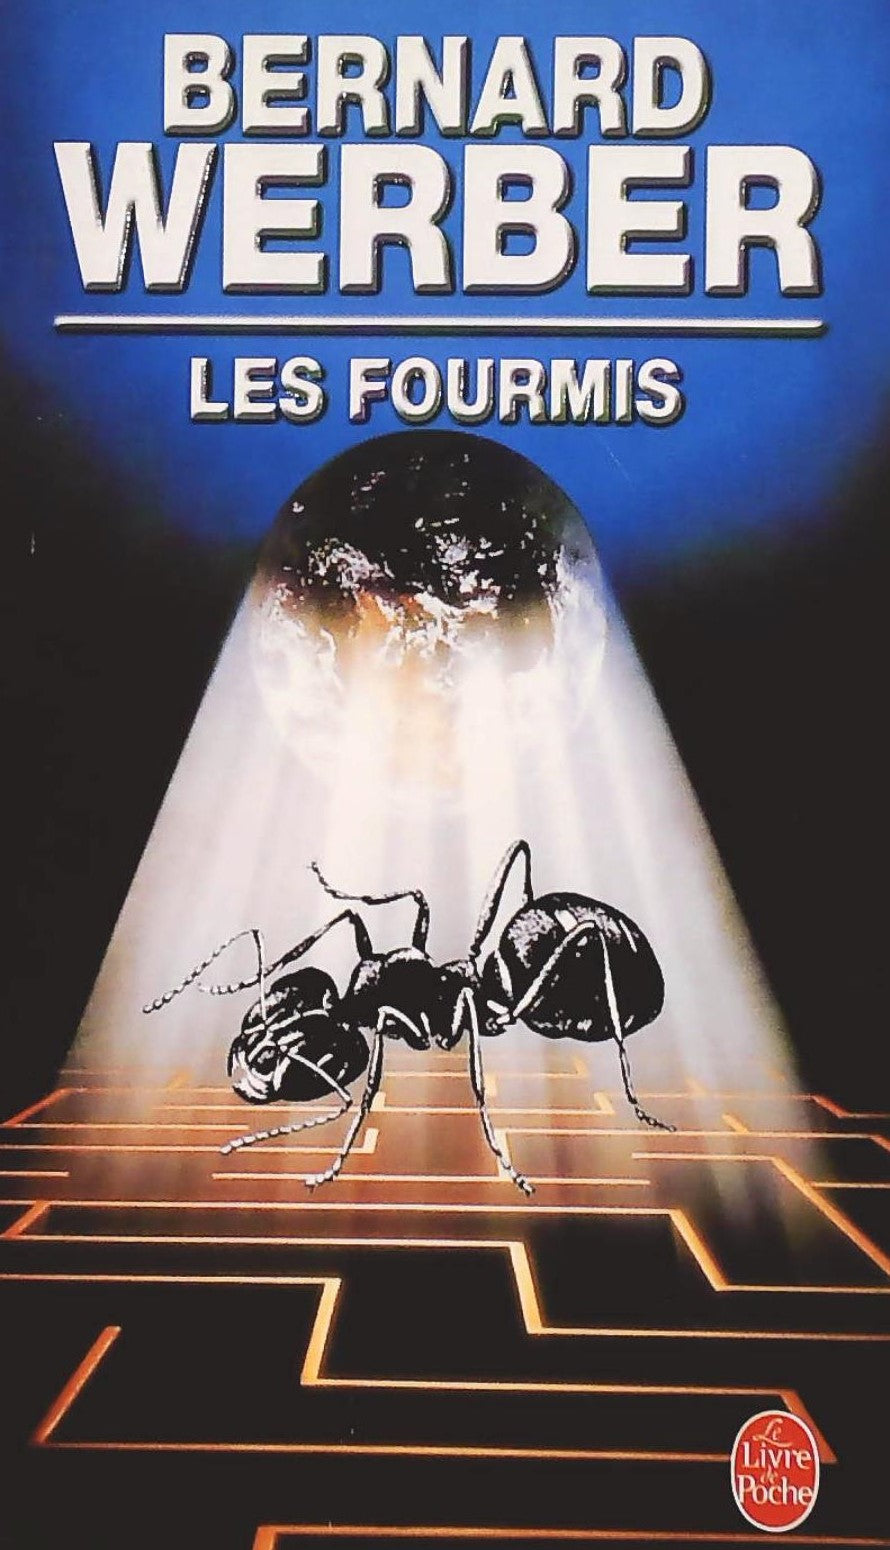 Le cycle des fourmis # 1 : Les fourmis - Bernard Werber